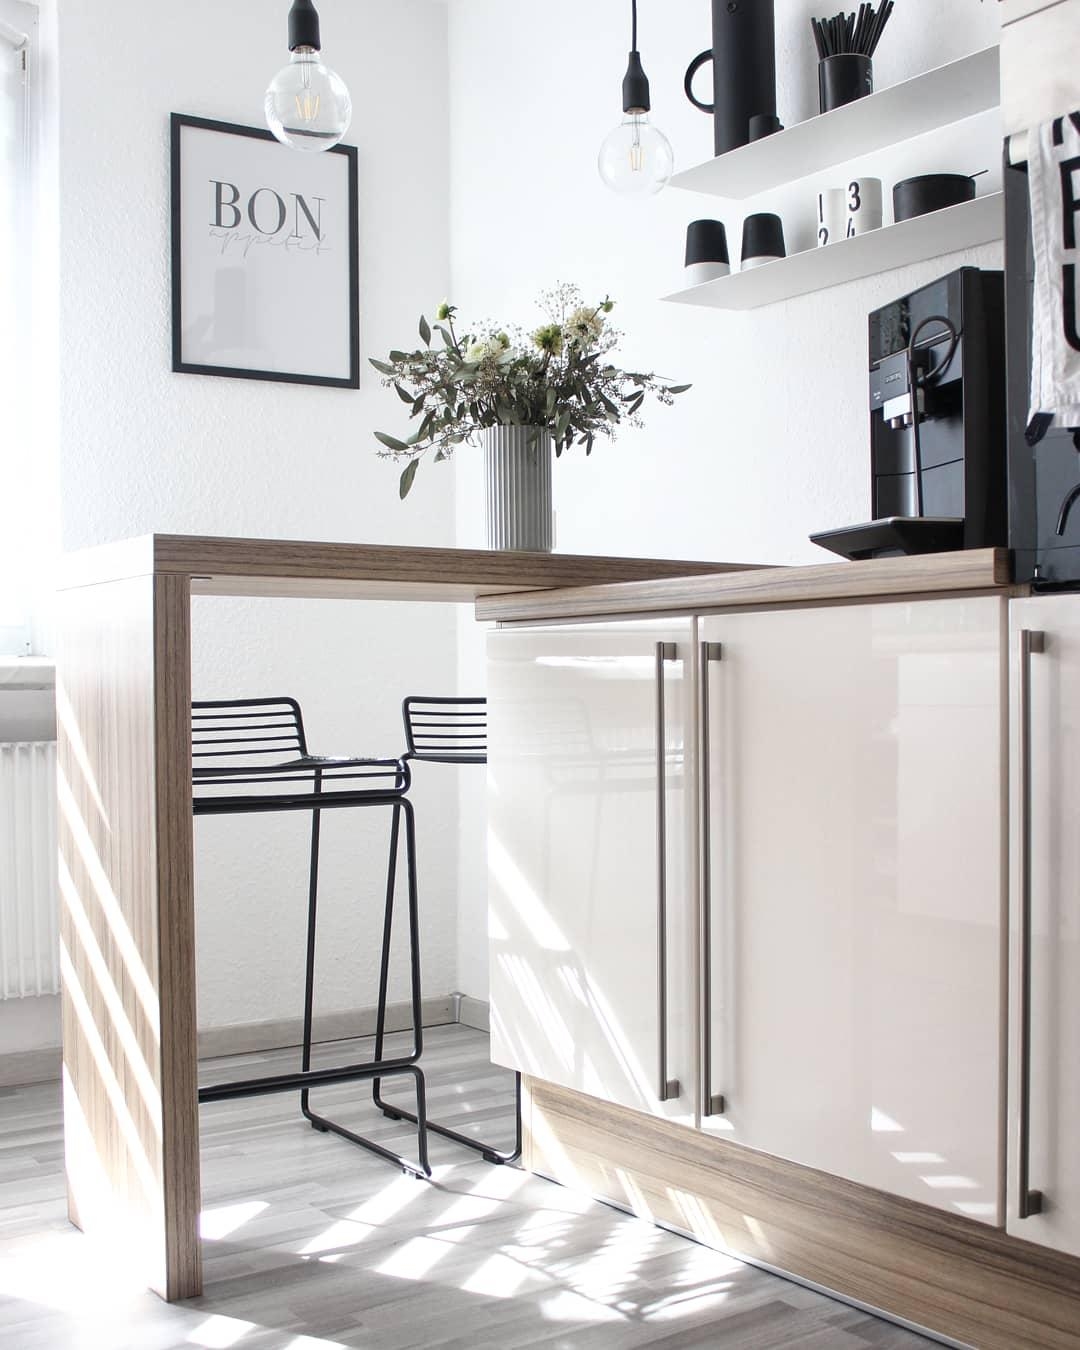 Schönen Abend für Euch♡
#haydesign #minimalism #küche #kitchendetails #scandinavianhome 